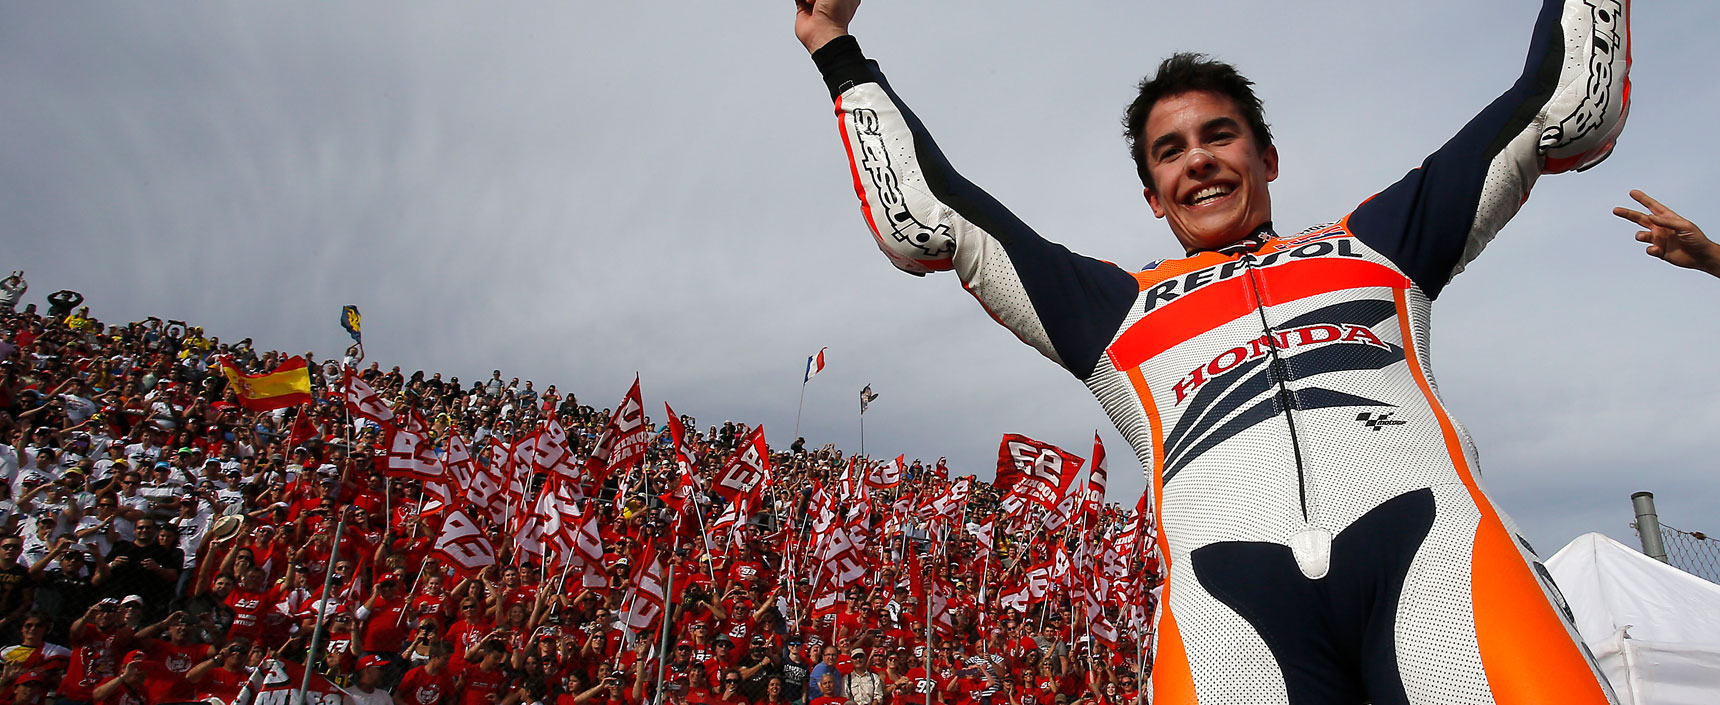  Con 20 años, Marc Márquez se convirtió en el piloto más jóven de la historia en lograr un Mundial de MotoGP